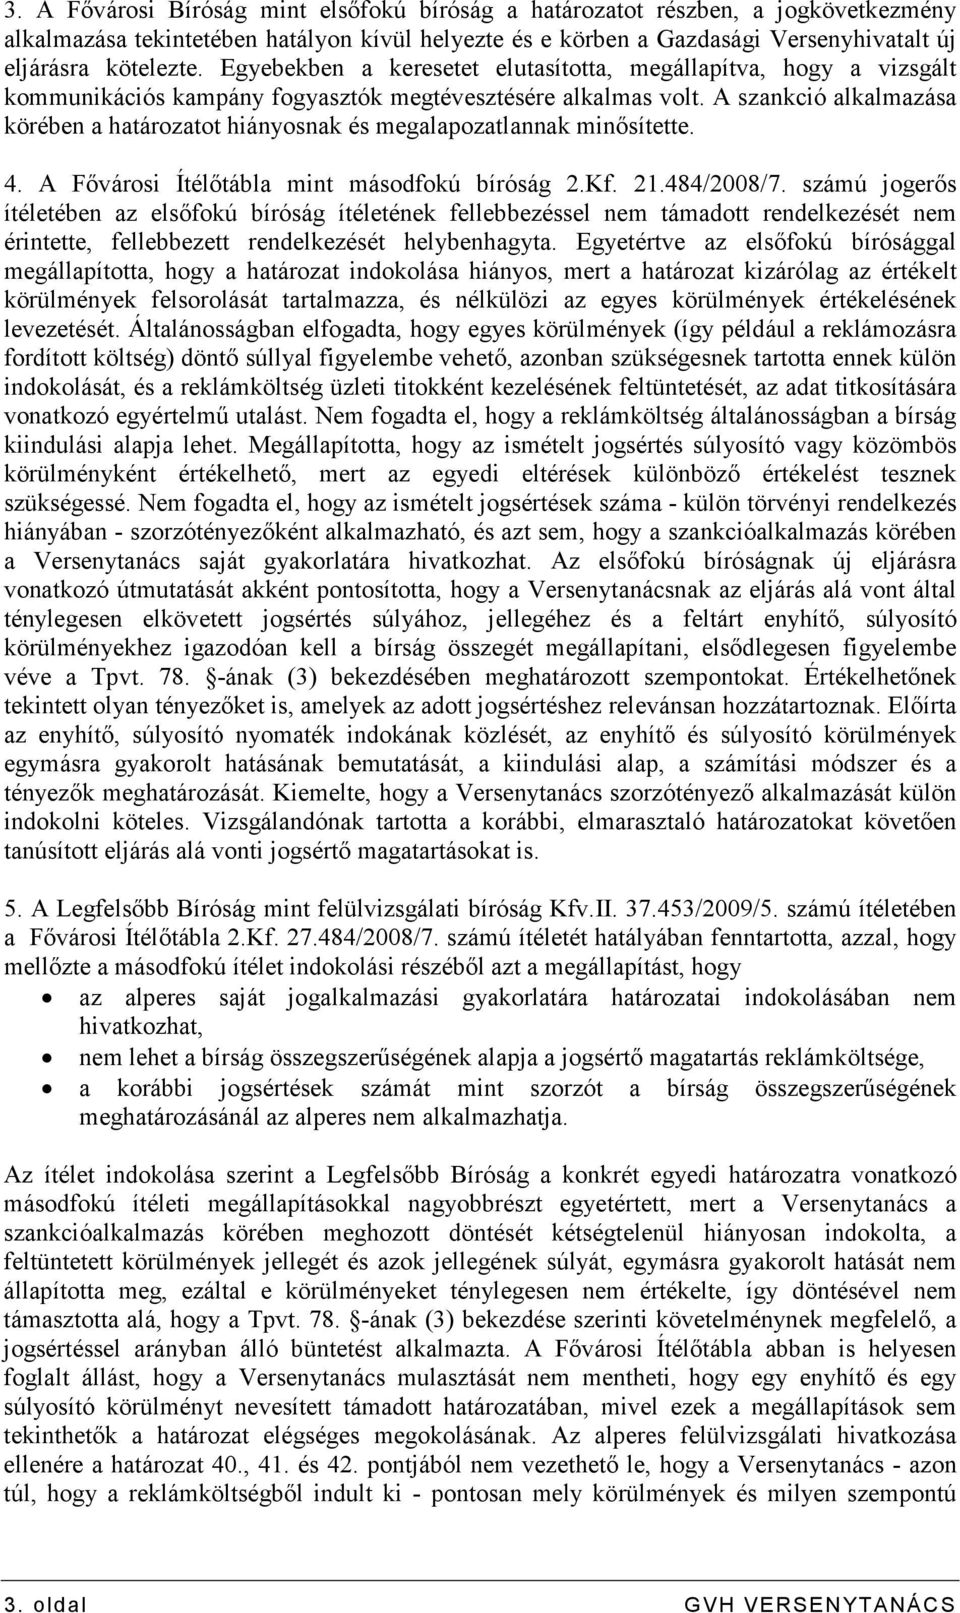 A szankció alkalmazása körében a határozatot hiányosnak és megalapozatlannak minısítette. 4. A Fıvárosi Ítélıtábla mint másodfokú bíróság 2.Kf. 21.484/2008/7.